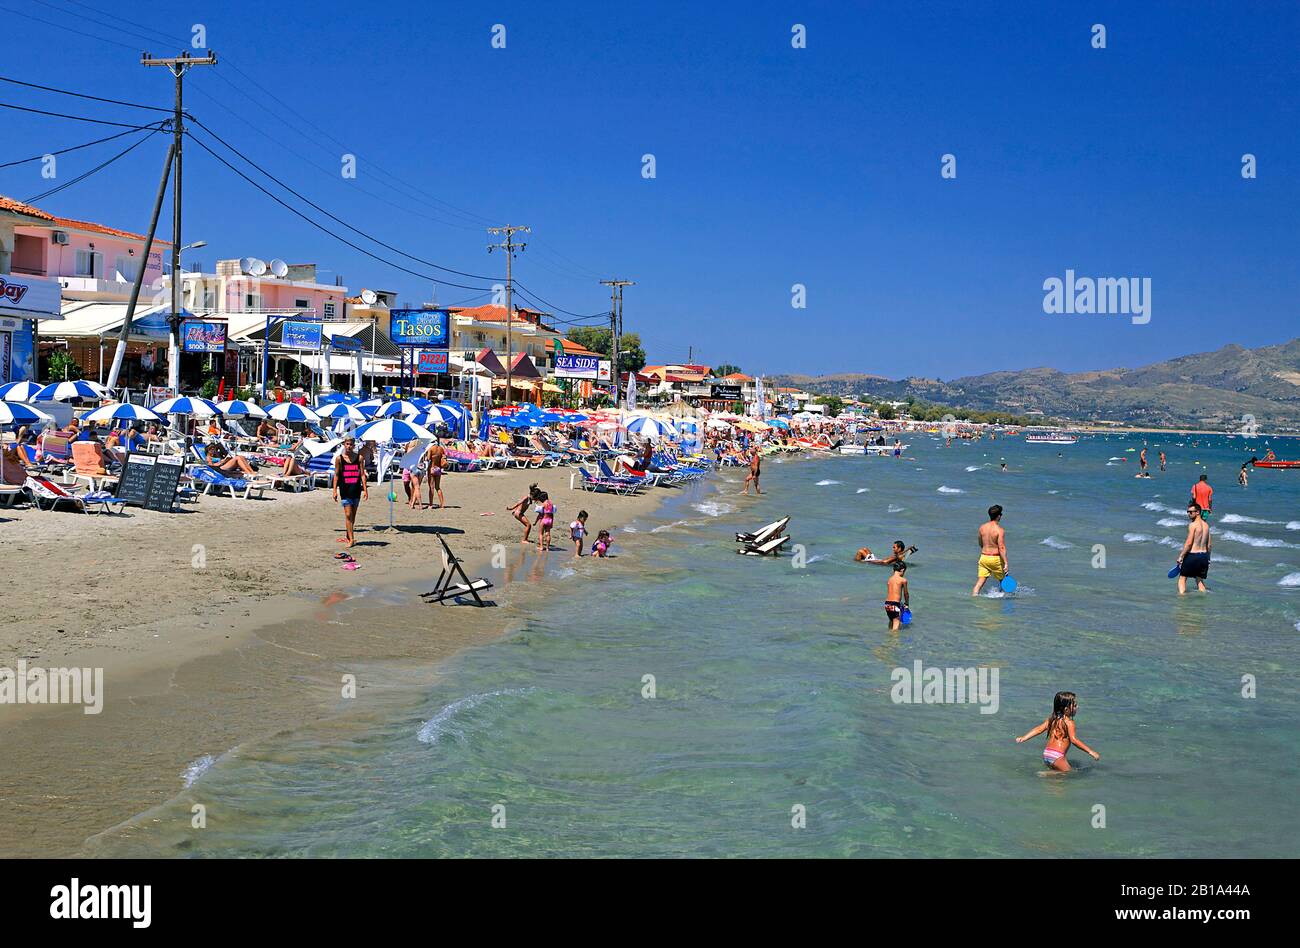 Urlauber am Sandstrand von Laganas, touristischer Ort auf der Insel Zakynthos, Griechenland | People at the beach of Laganas, Zakynthos island, Greece Stock Photo